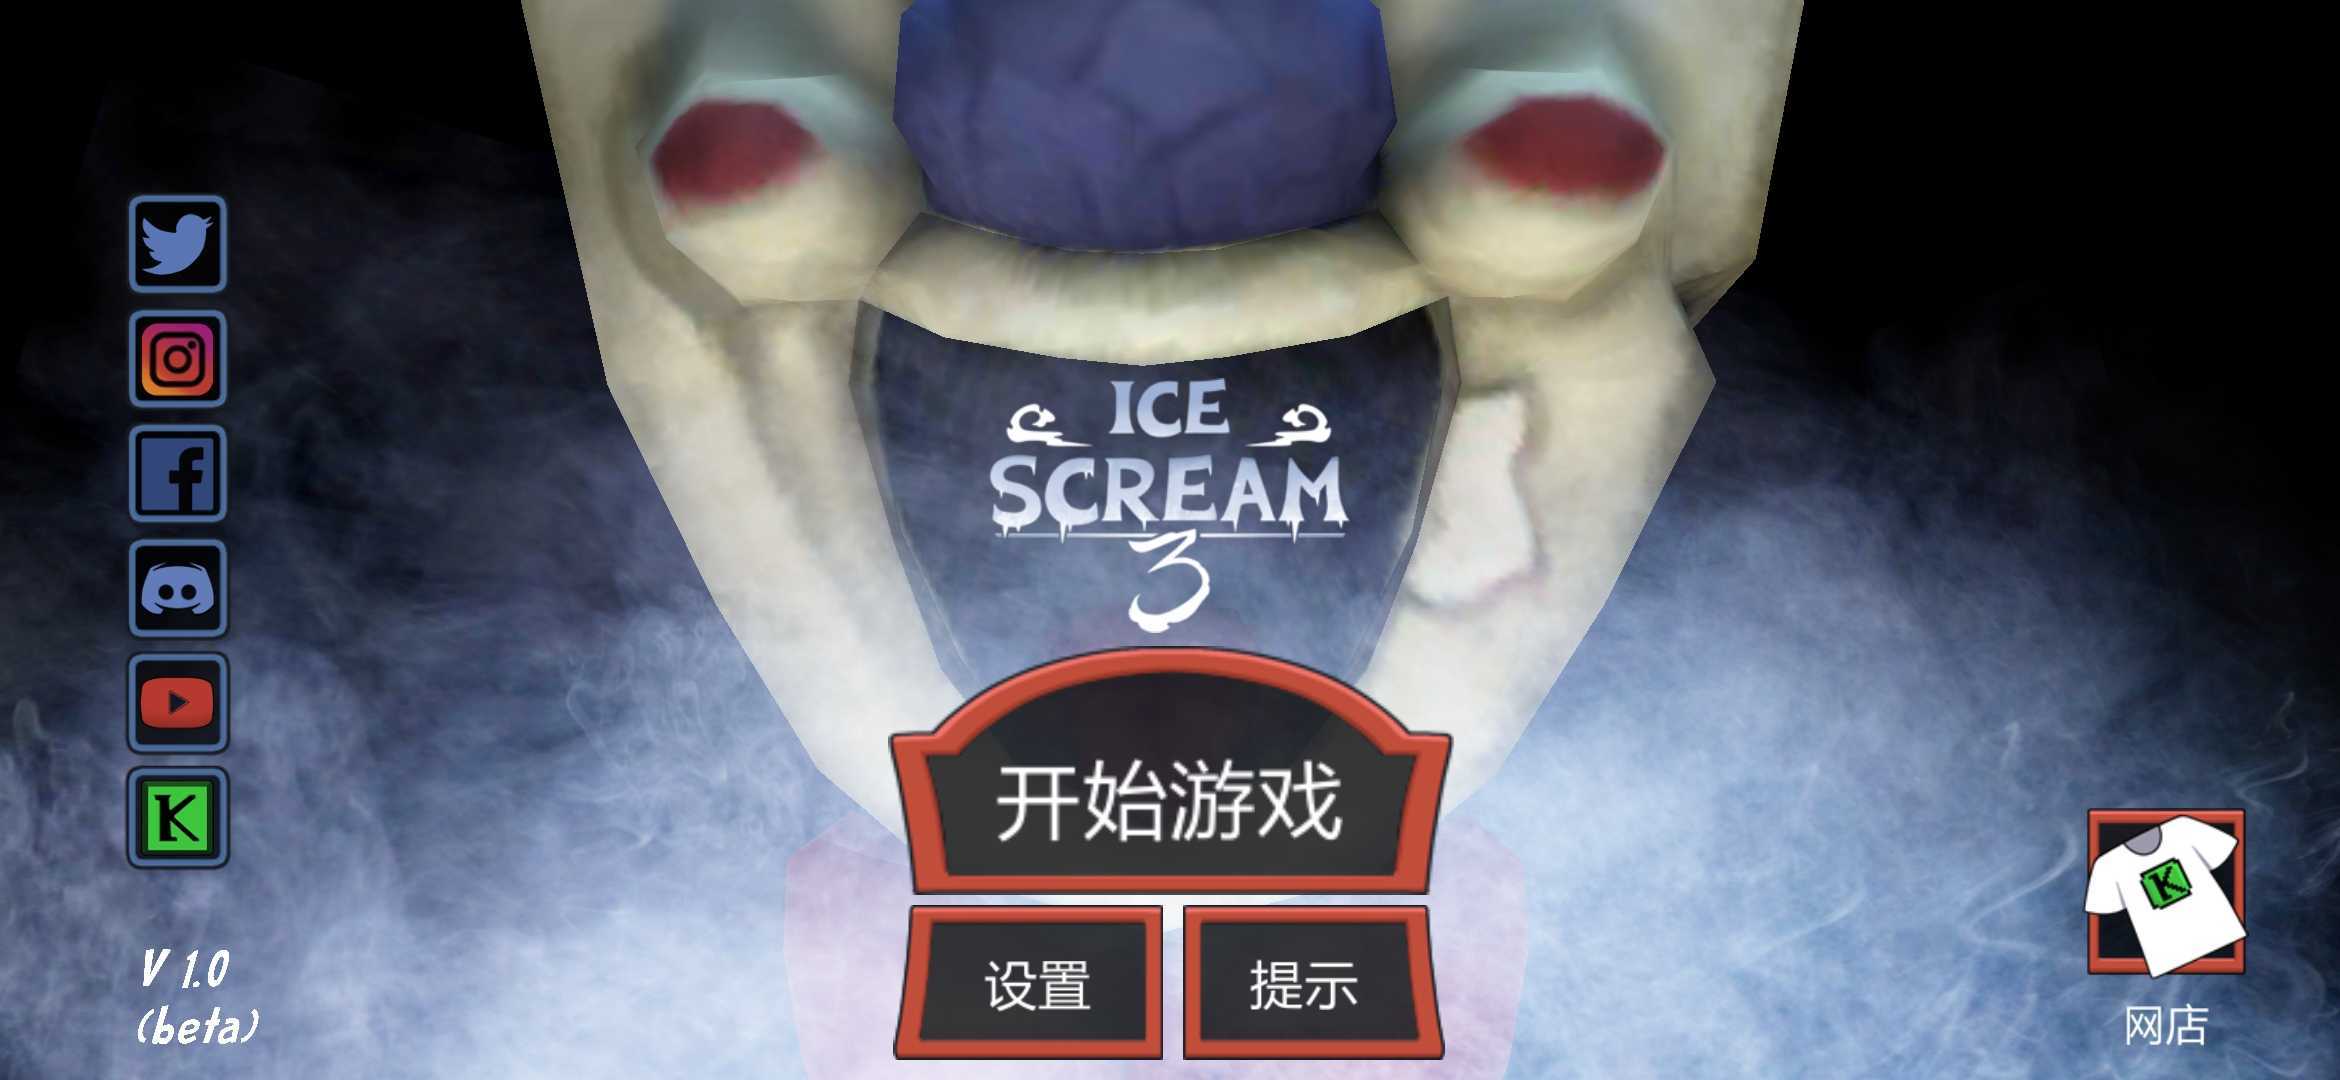 恐怖冰淇淋3无限子弹版(Ice Scream 3)